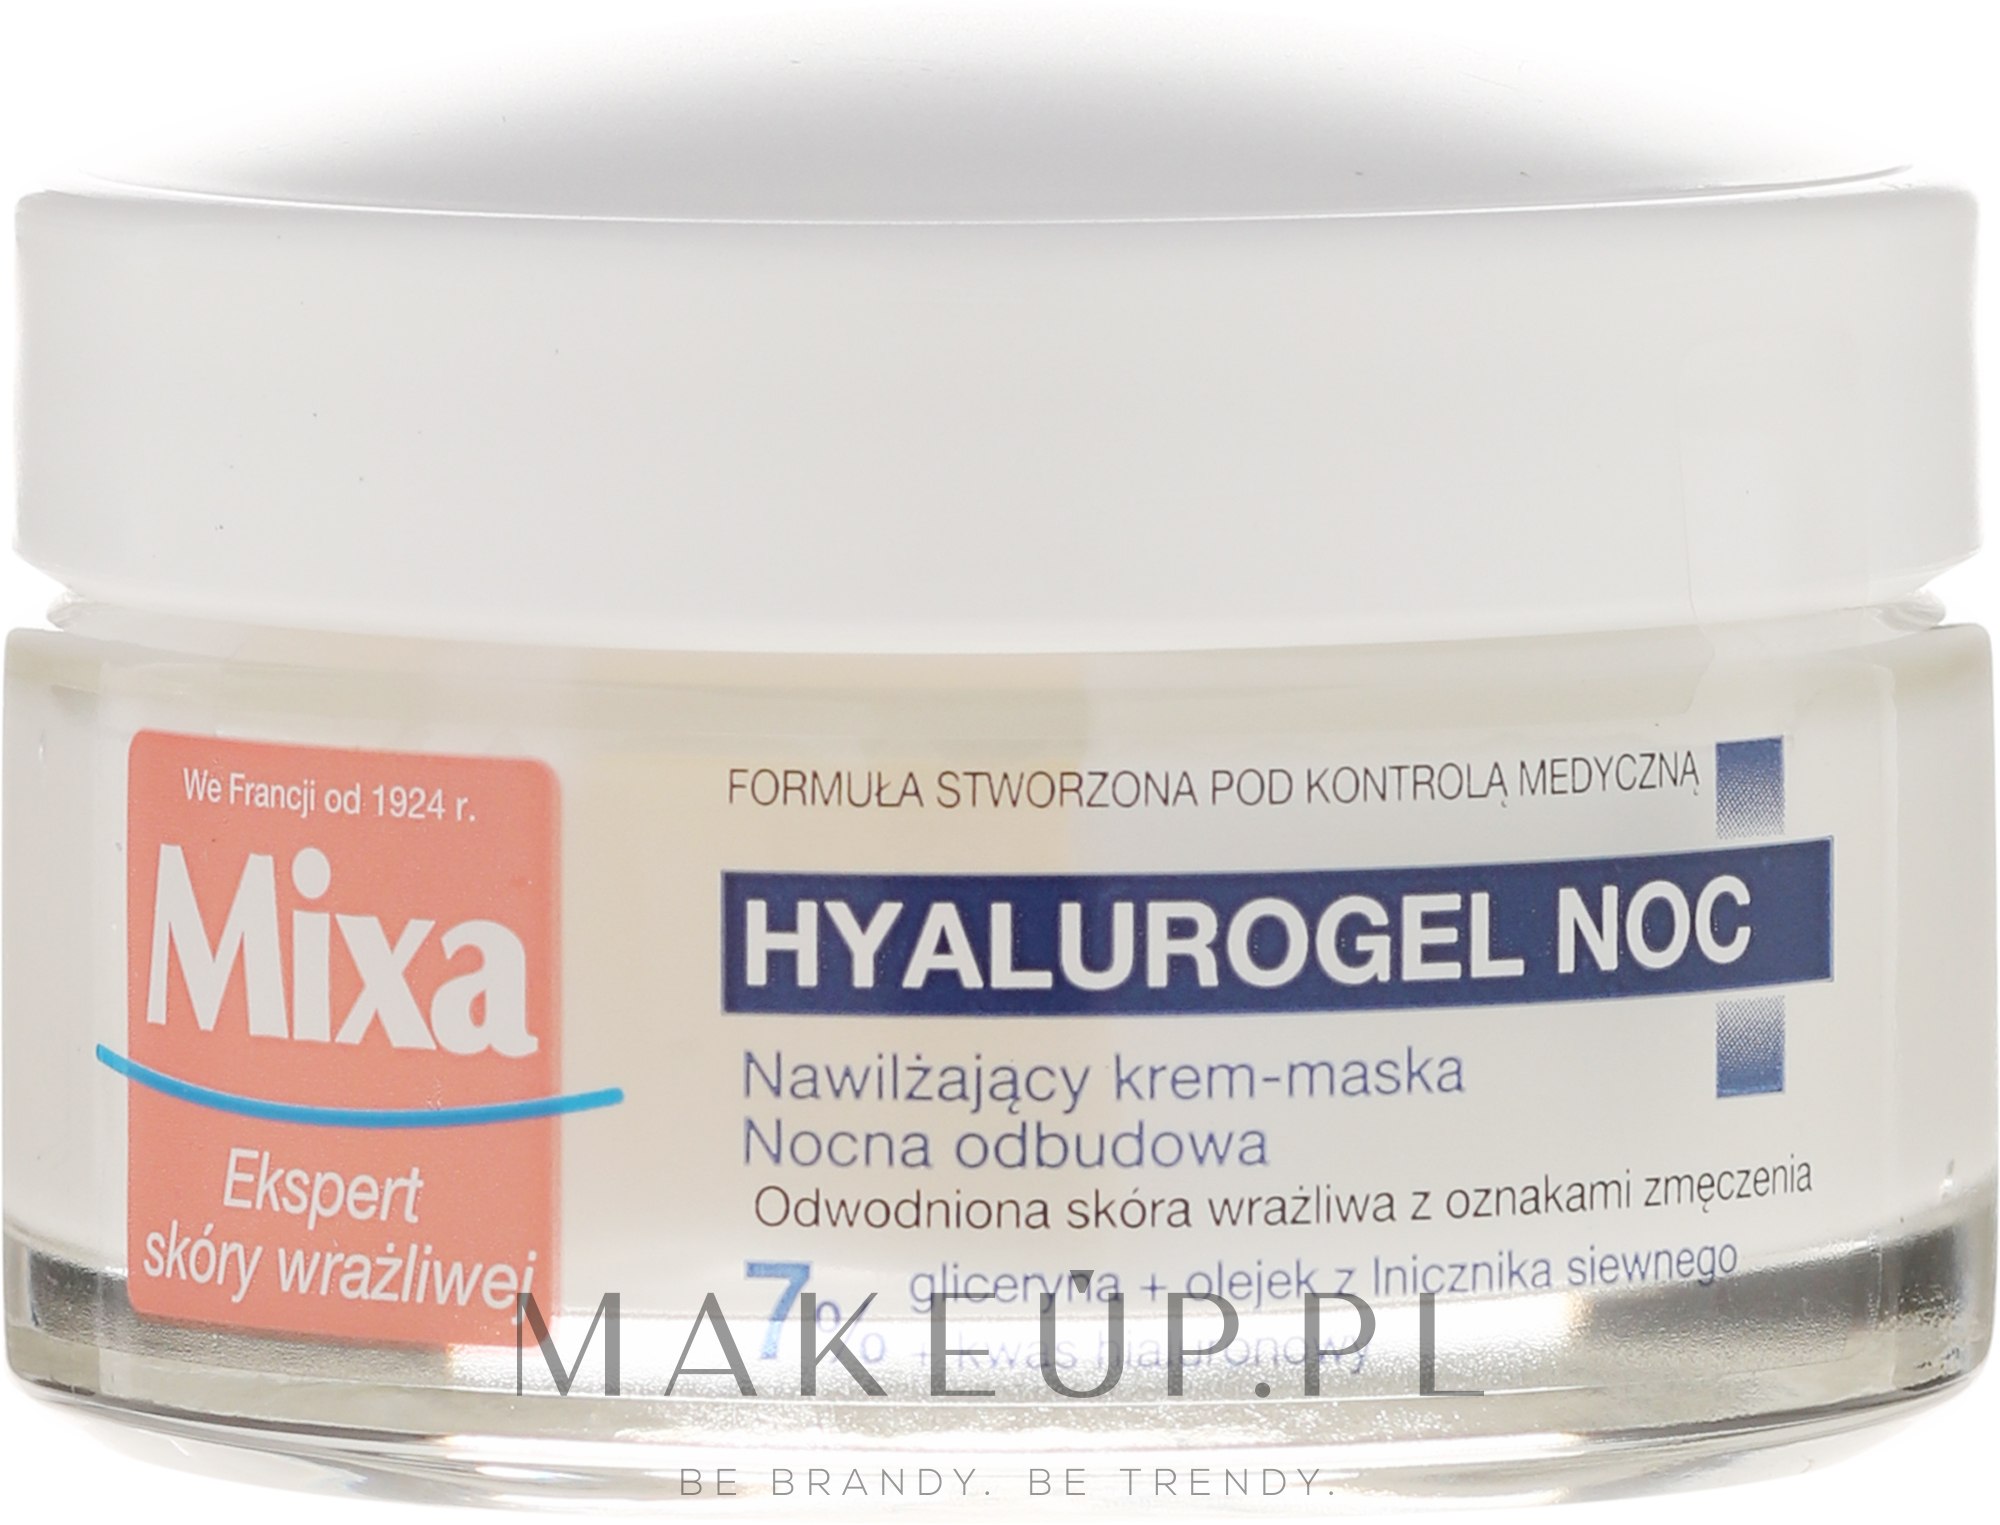 Intensywnie nawilżający krem-maska do cery suchej i wrażliwej Nocna odbudowa - Mixa Sensitive Skin Expert Night Hyalurogel — Zdjęcie 50 ml